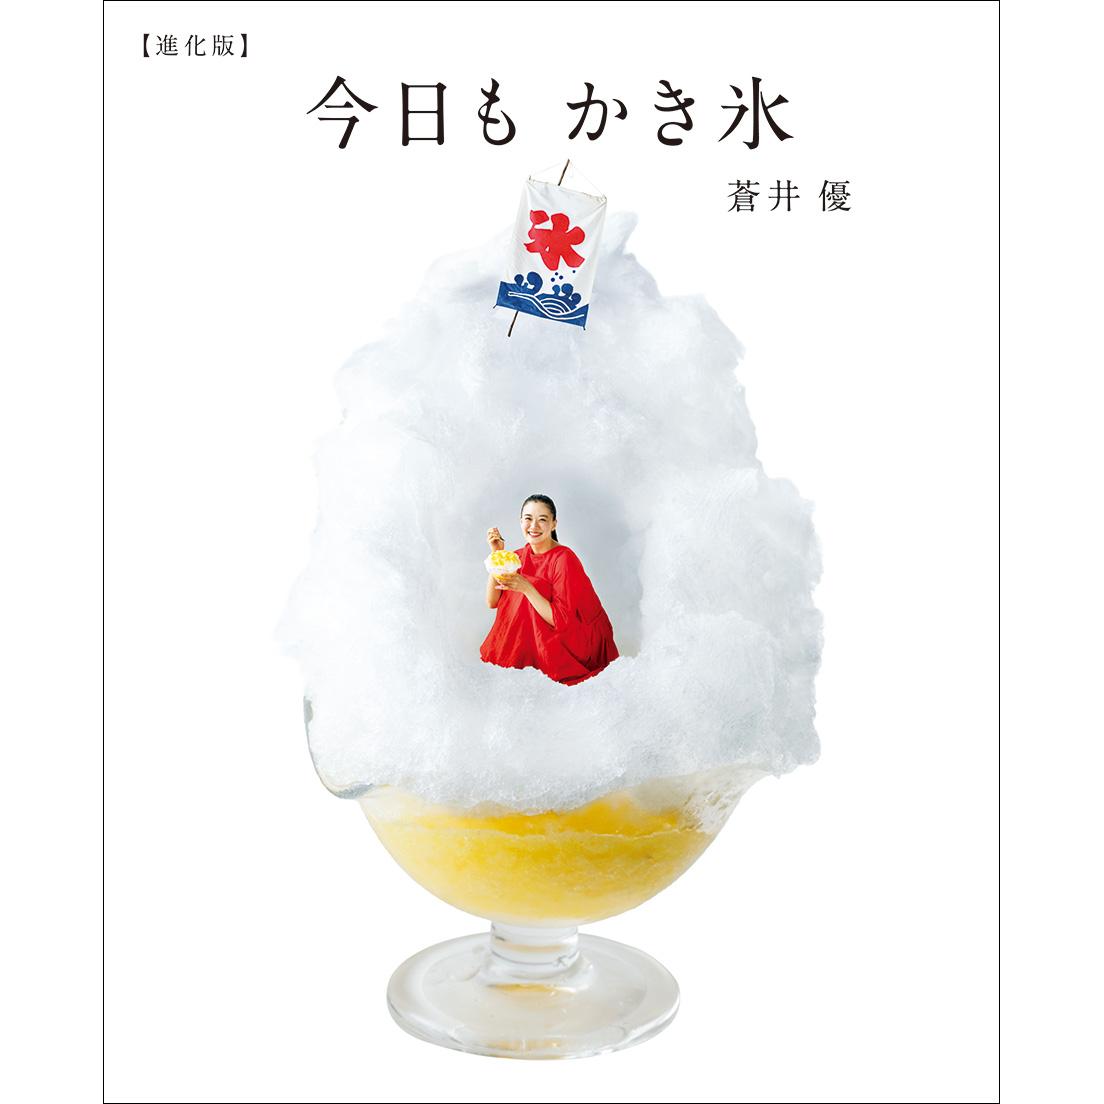 今回の表紙では、蒼井さんはかき氷のかまくらの中へ。写真は連載からすべての撮影を担当した写真家・木寺紀雄。